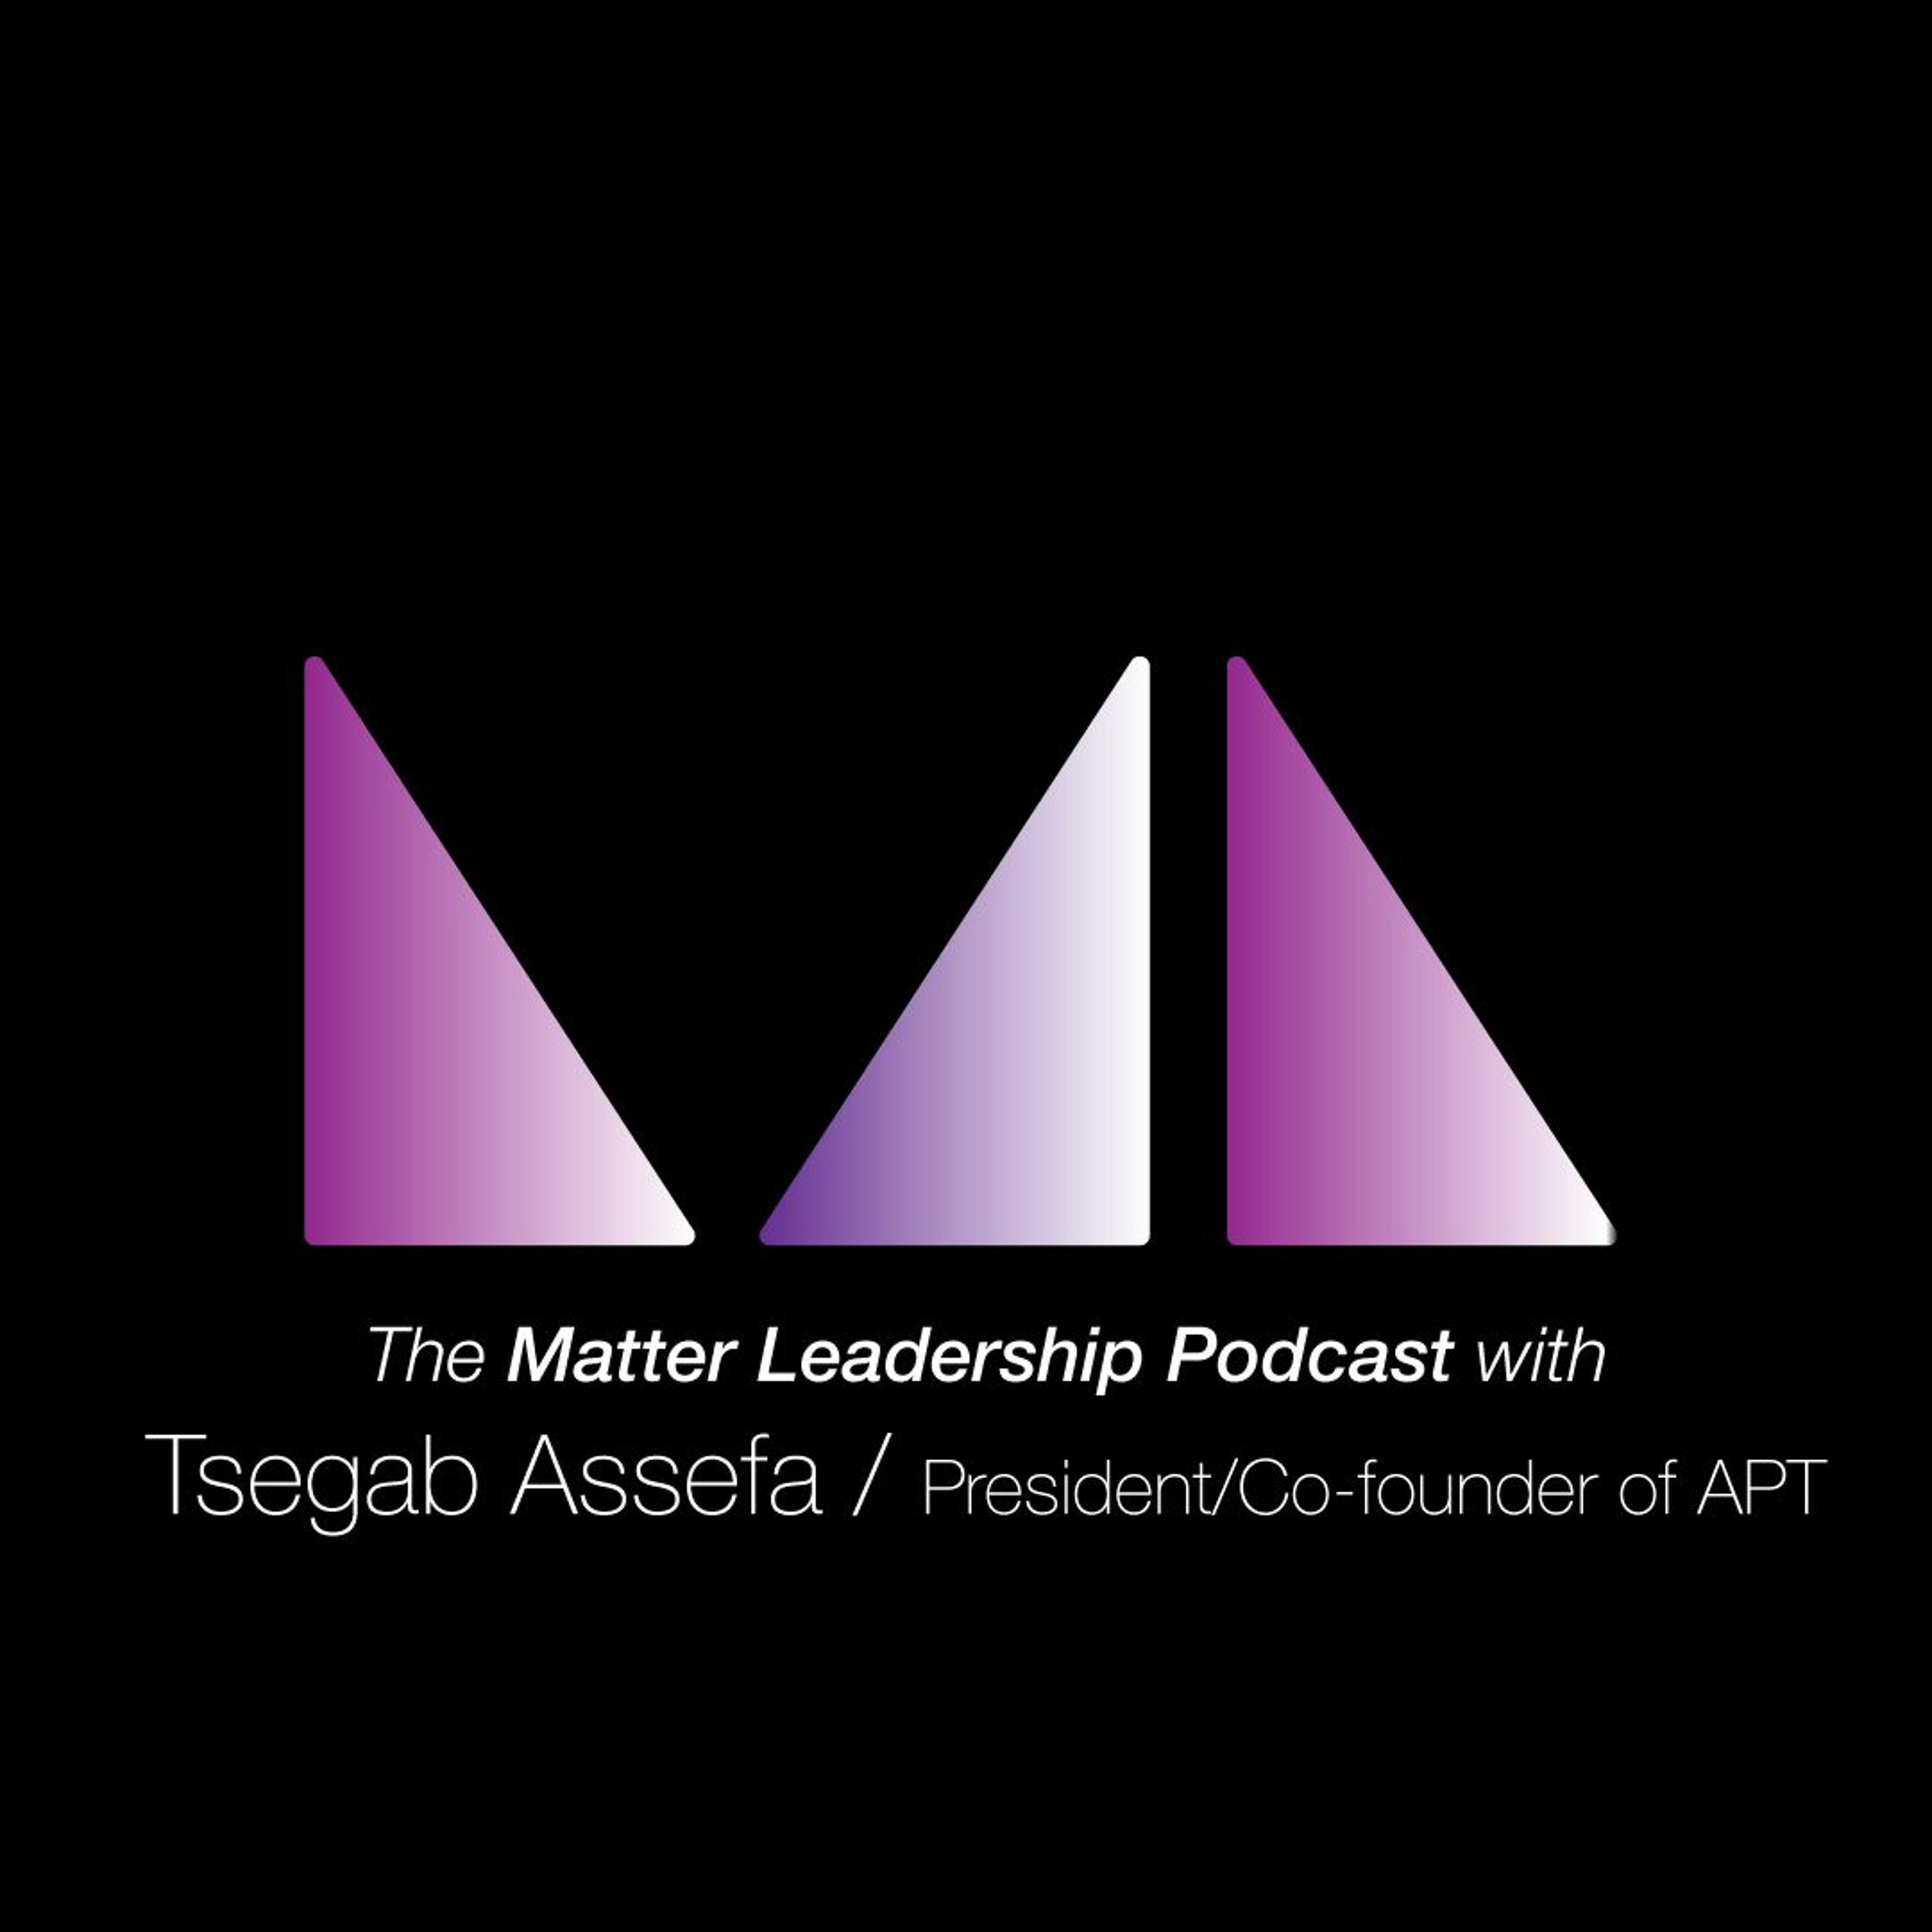 The Matter Leadership Podcast: Tsegab Assefa / President and co-founder of APT